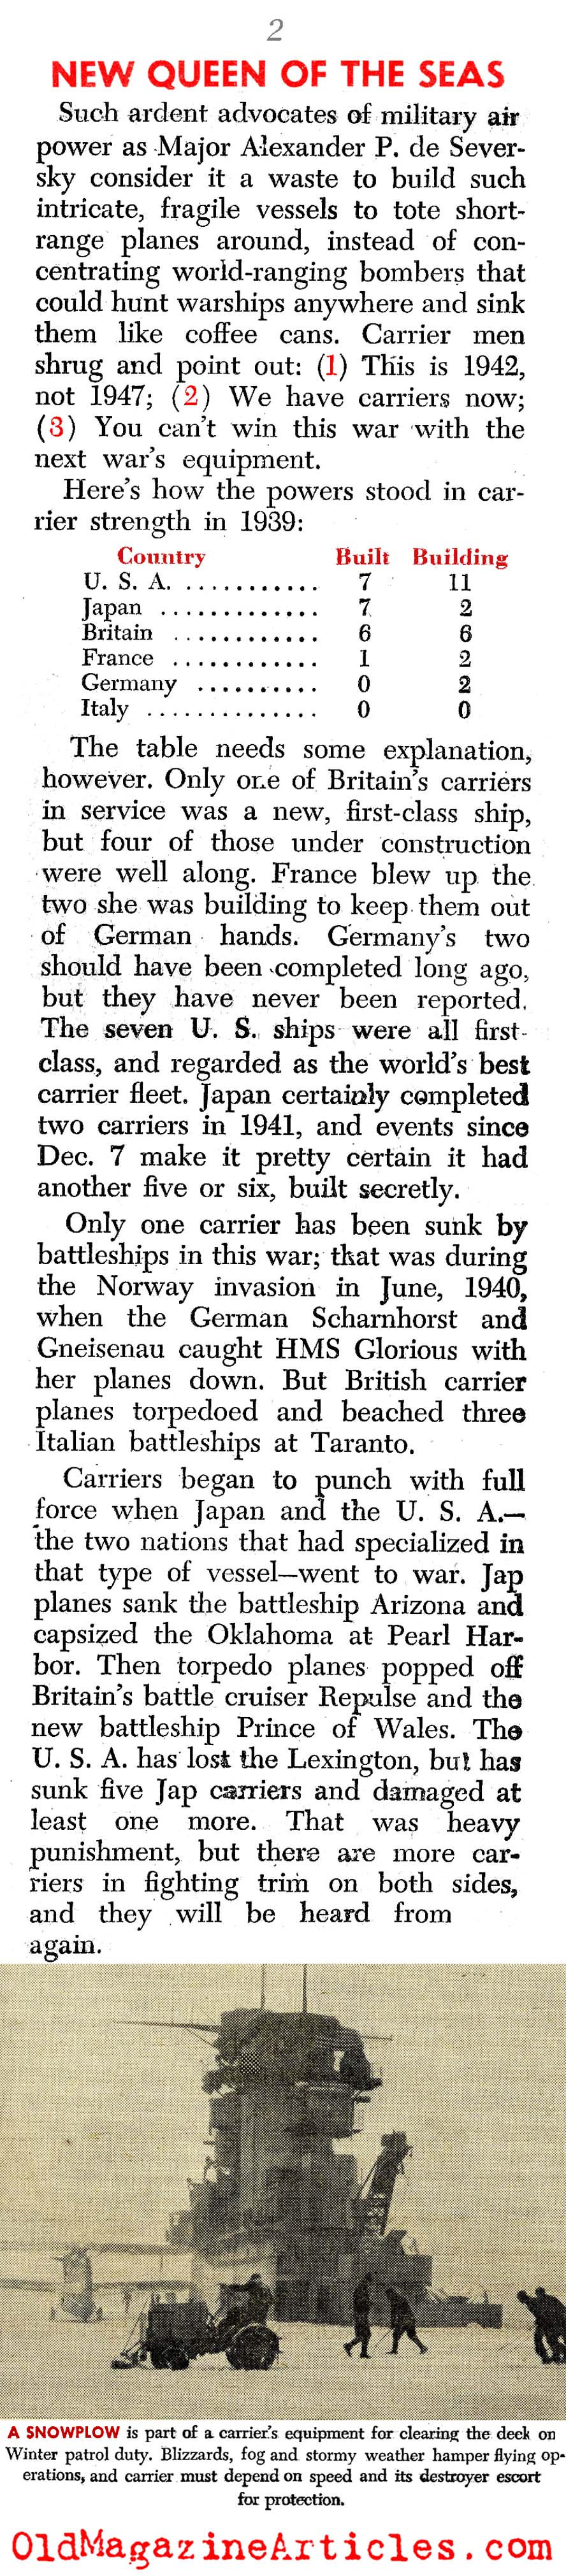 A New Kind of Naval Warfare (PM Tabloid, 1942)